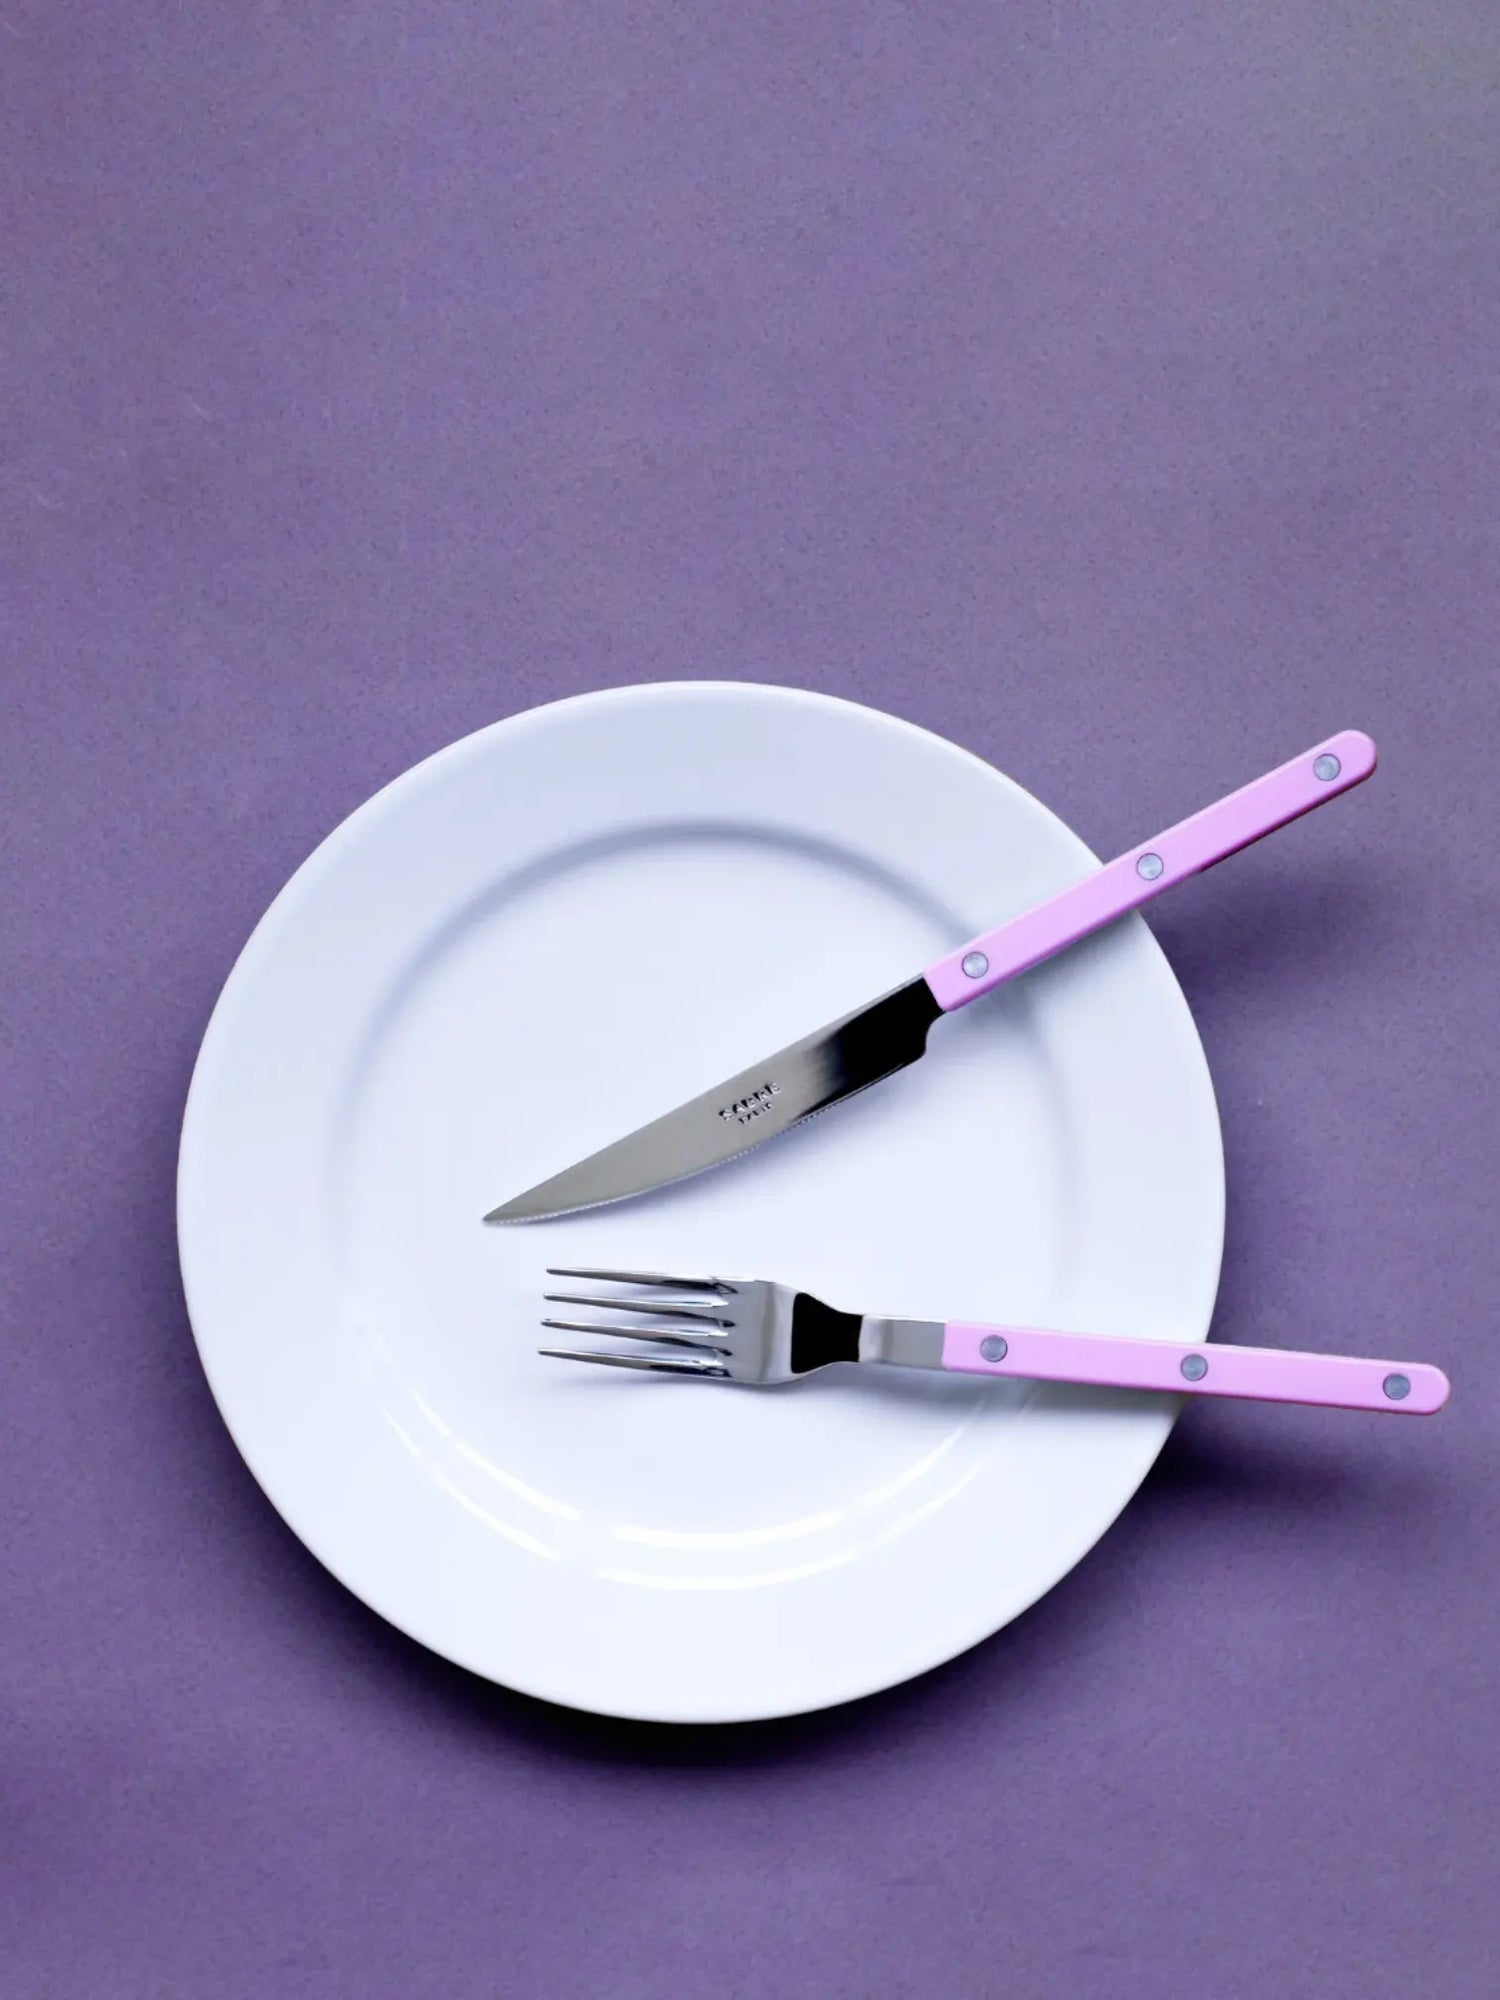 Bistrot dinner knife, solid pink